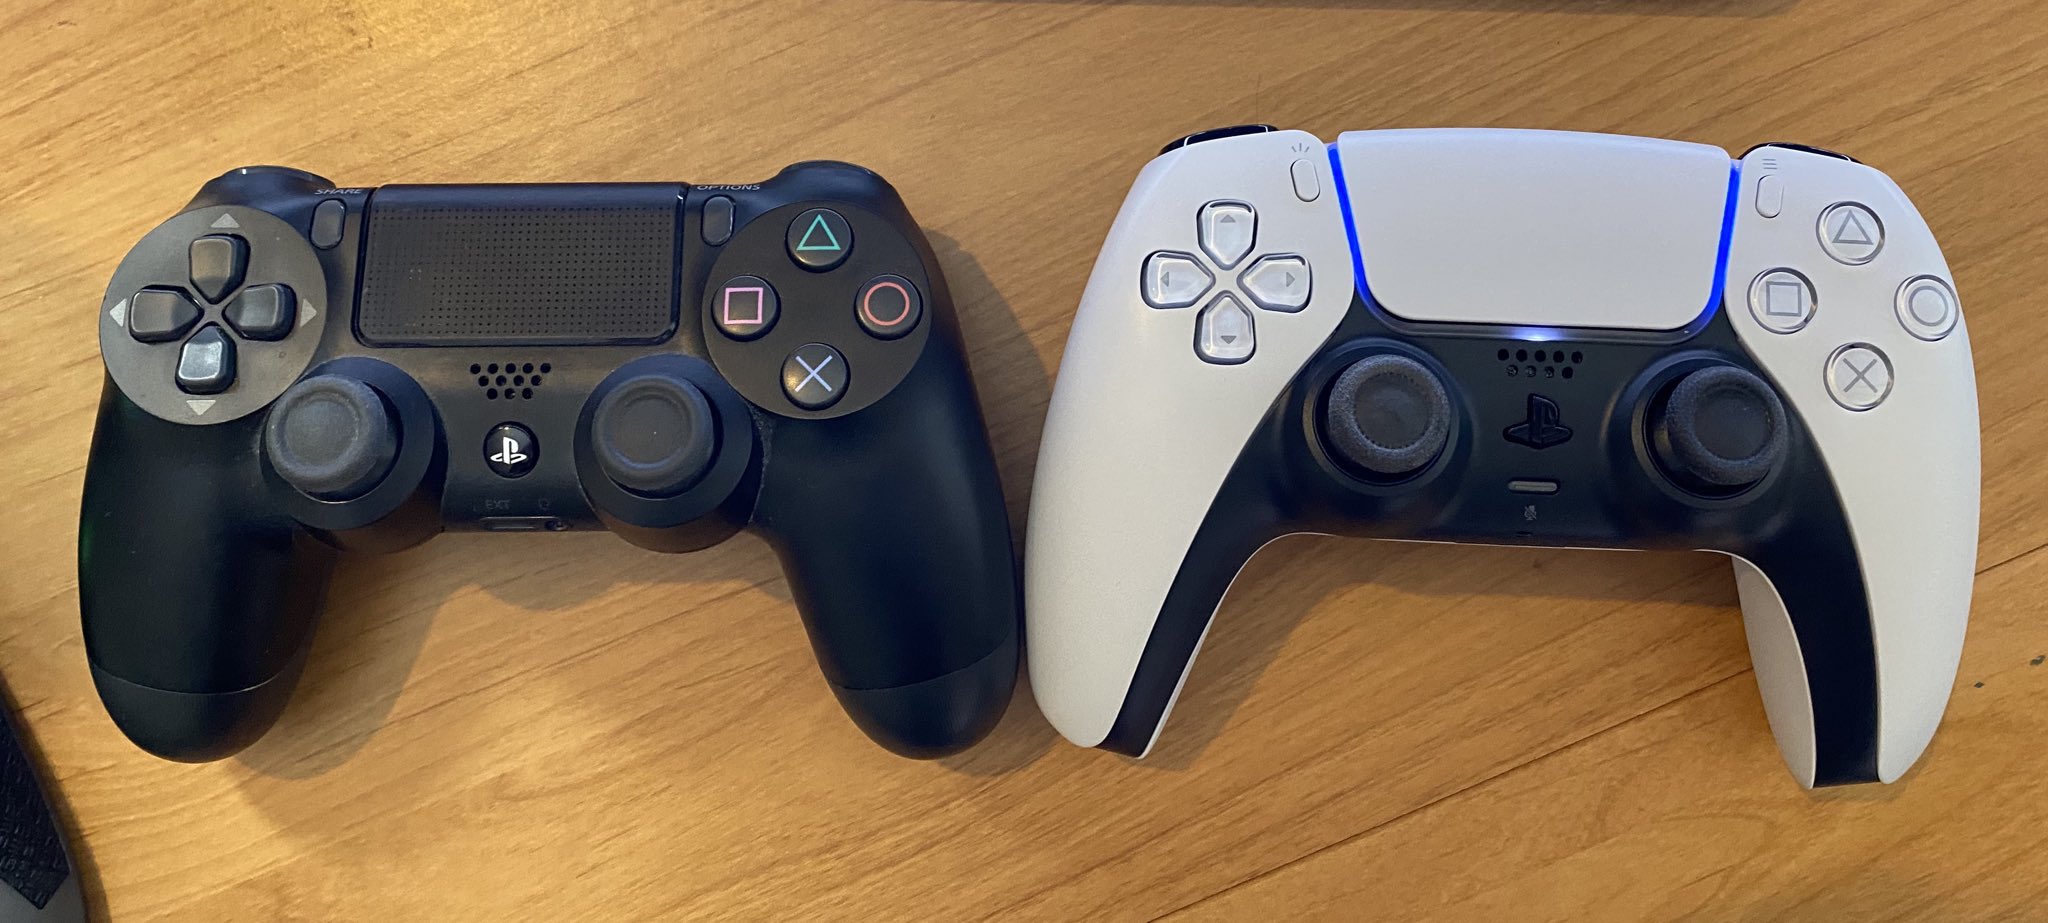 Playstation 5: Vorstellung des DualSense Controller für ...